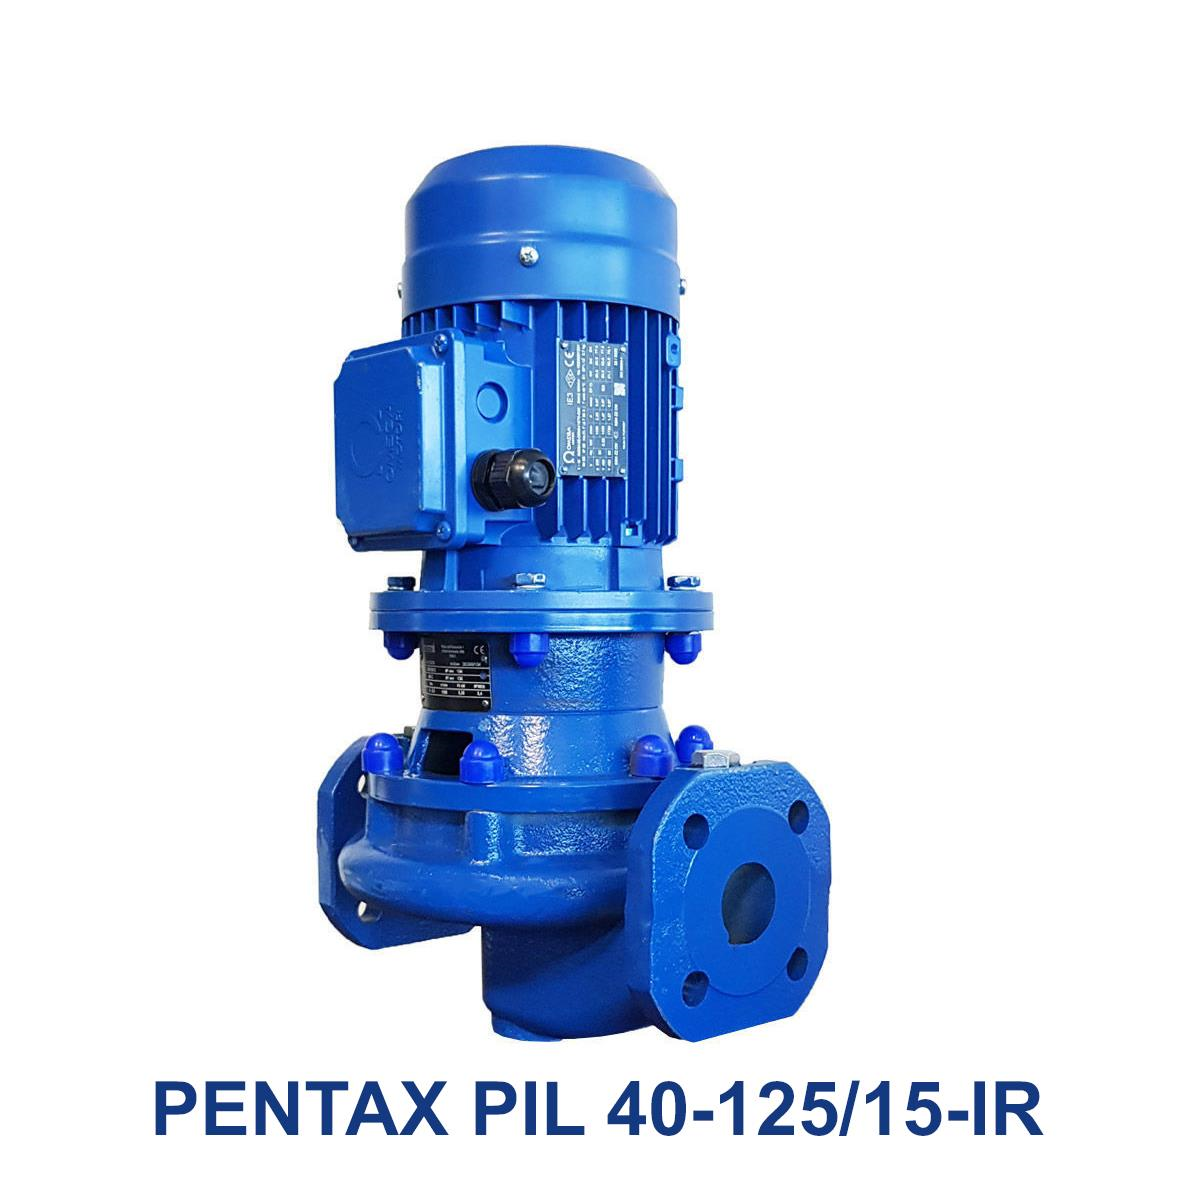 PENTAX-PIL-40-125-15-IR